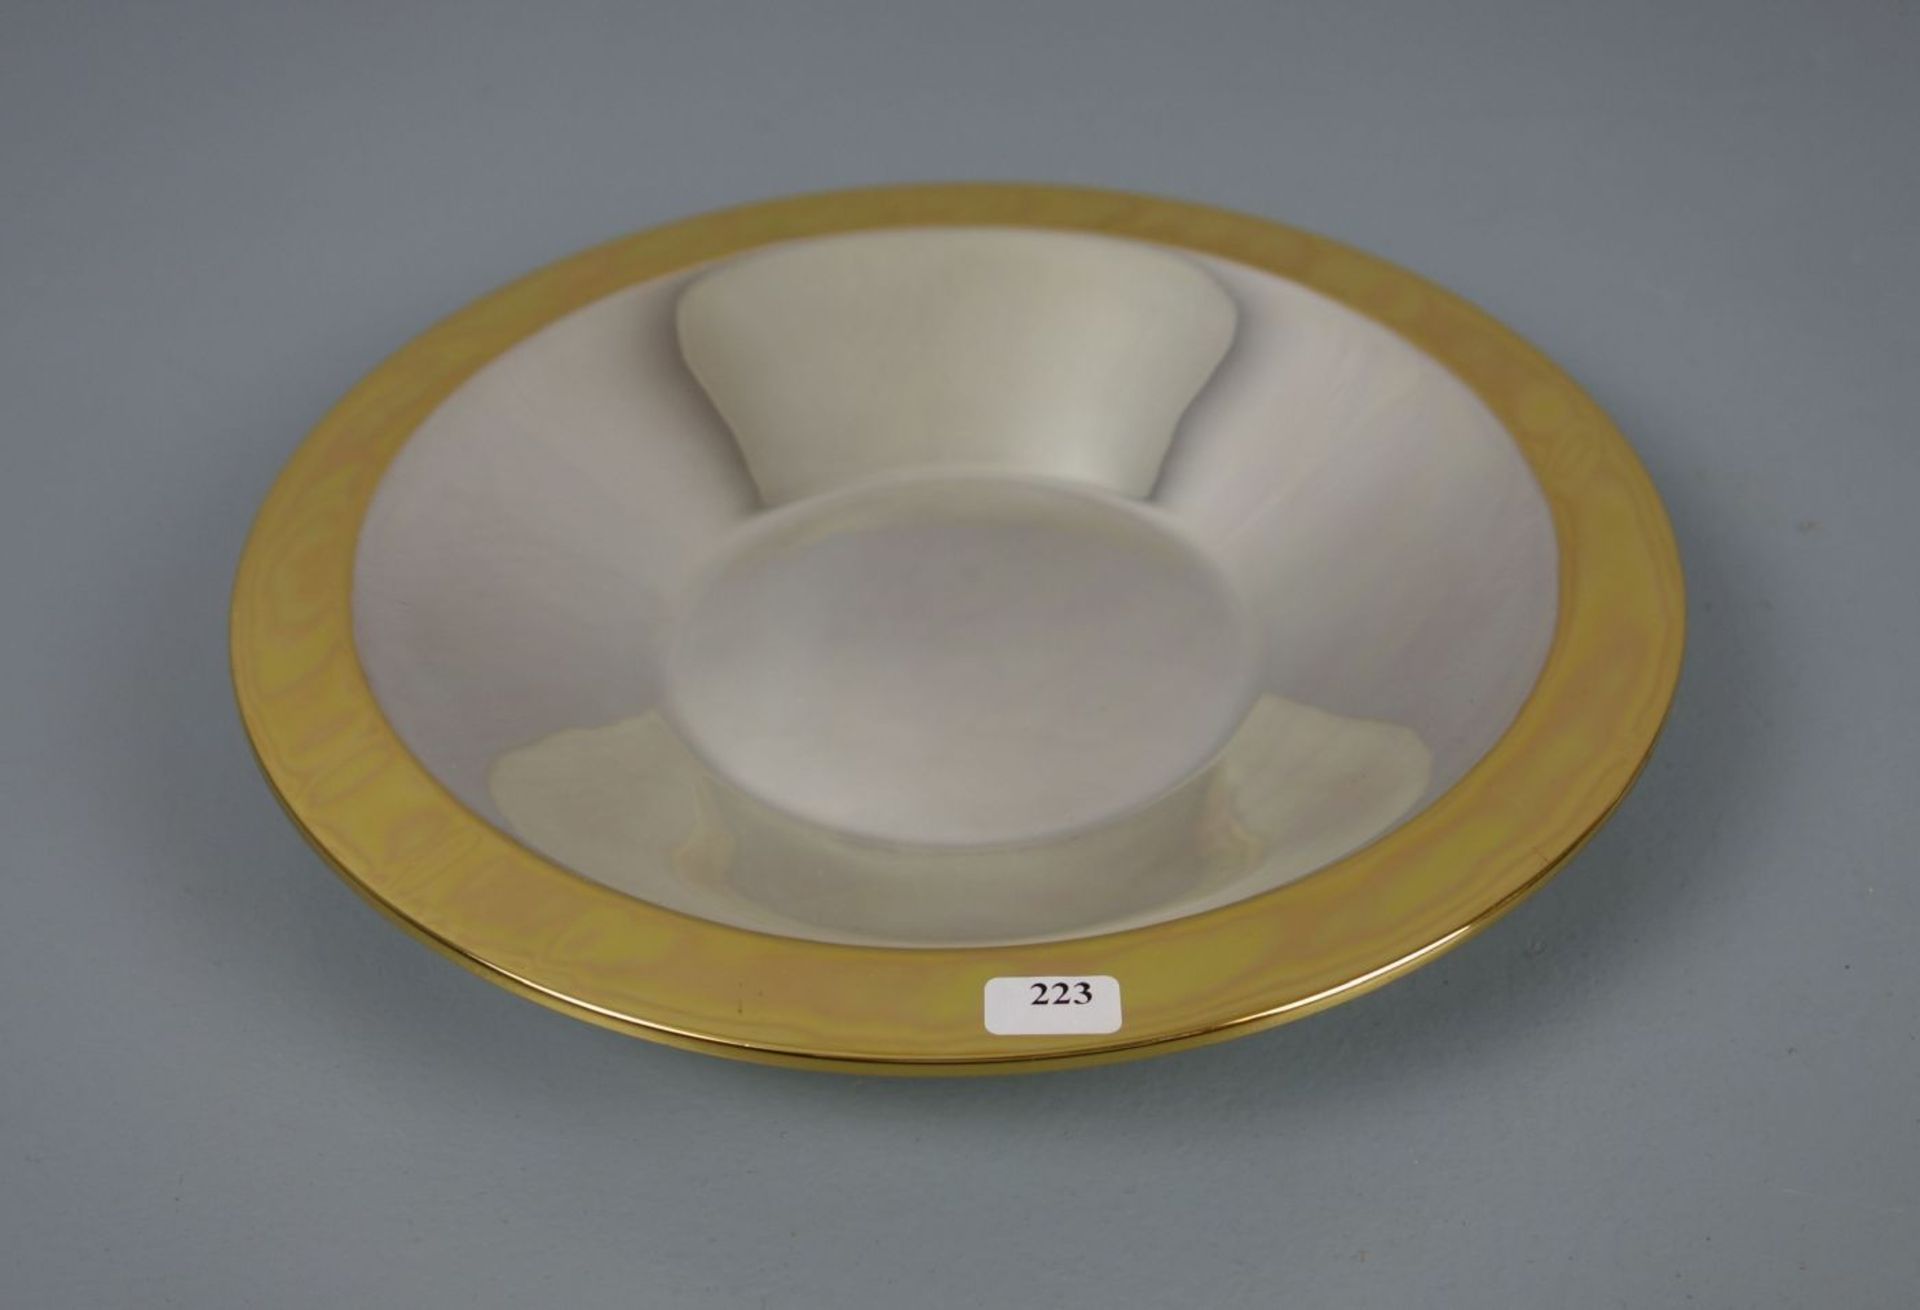 SCHALE / silver bowl, 835er Silber (345 g), Fa. Wilkens. Unter dem Stand mit Prägemarke "Wilkens"